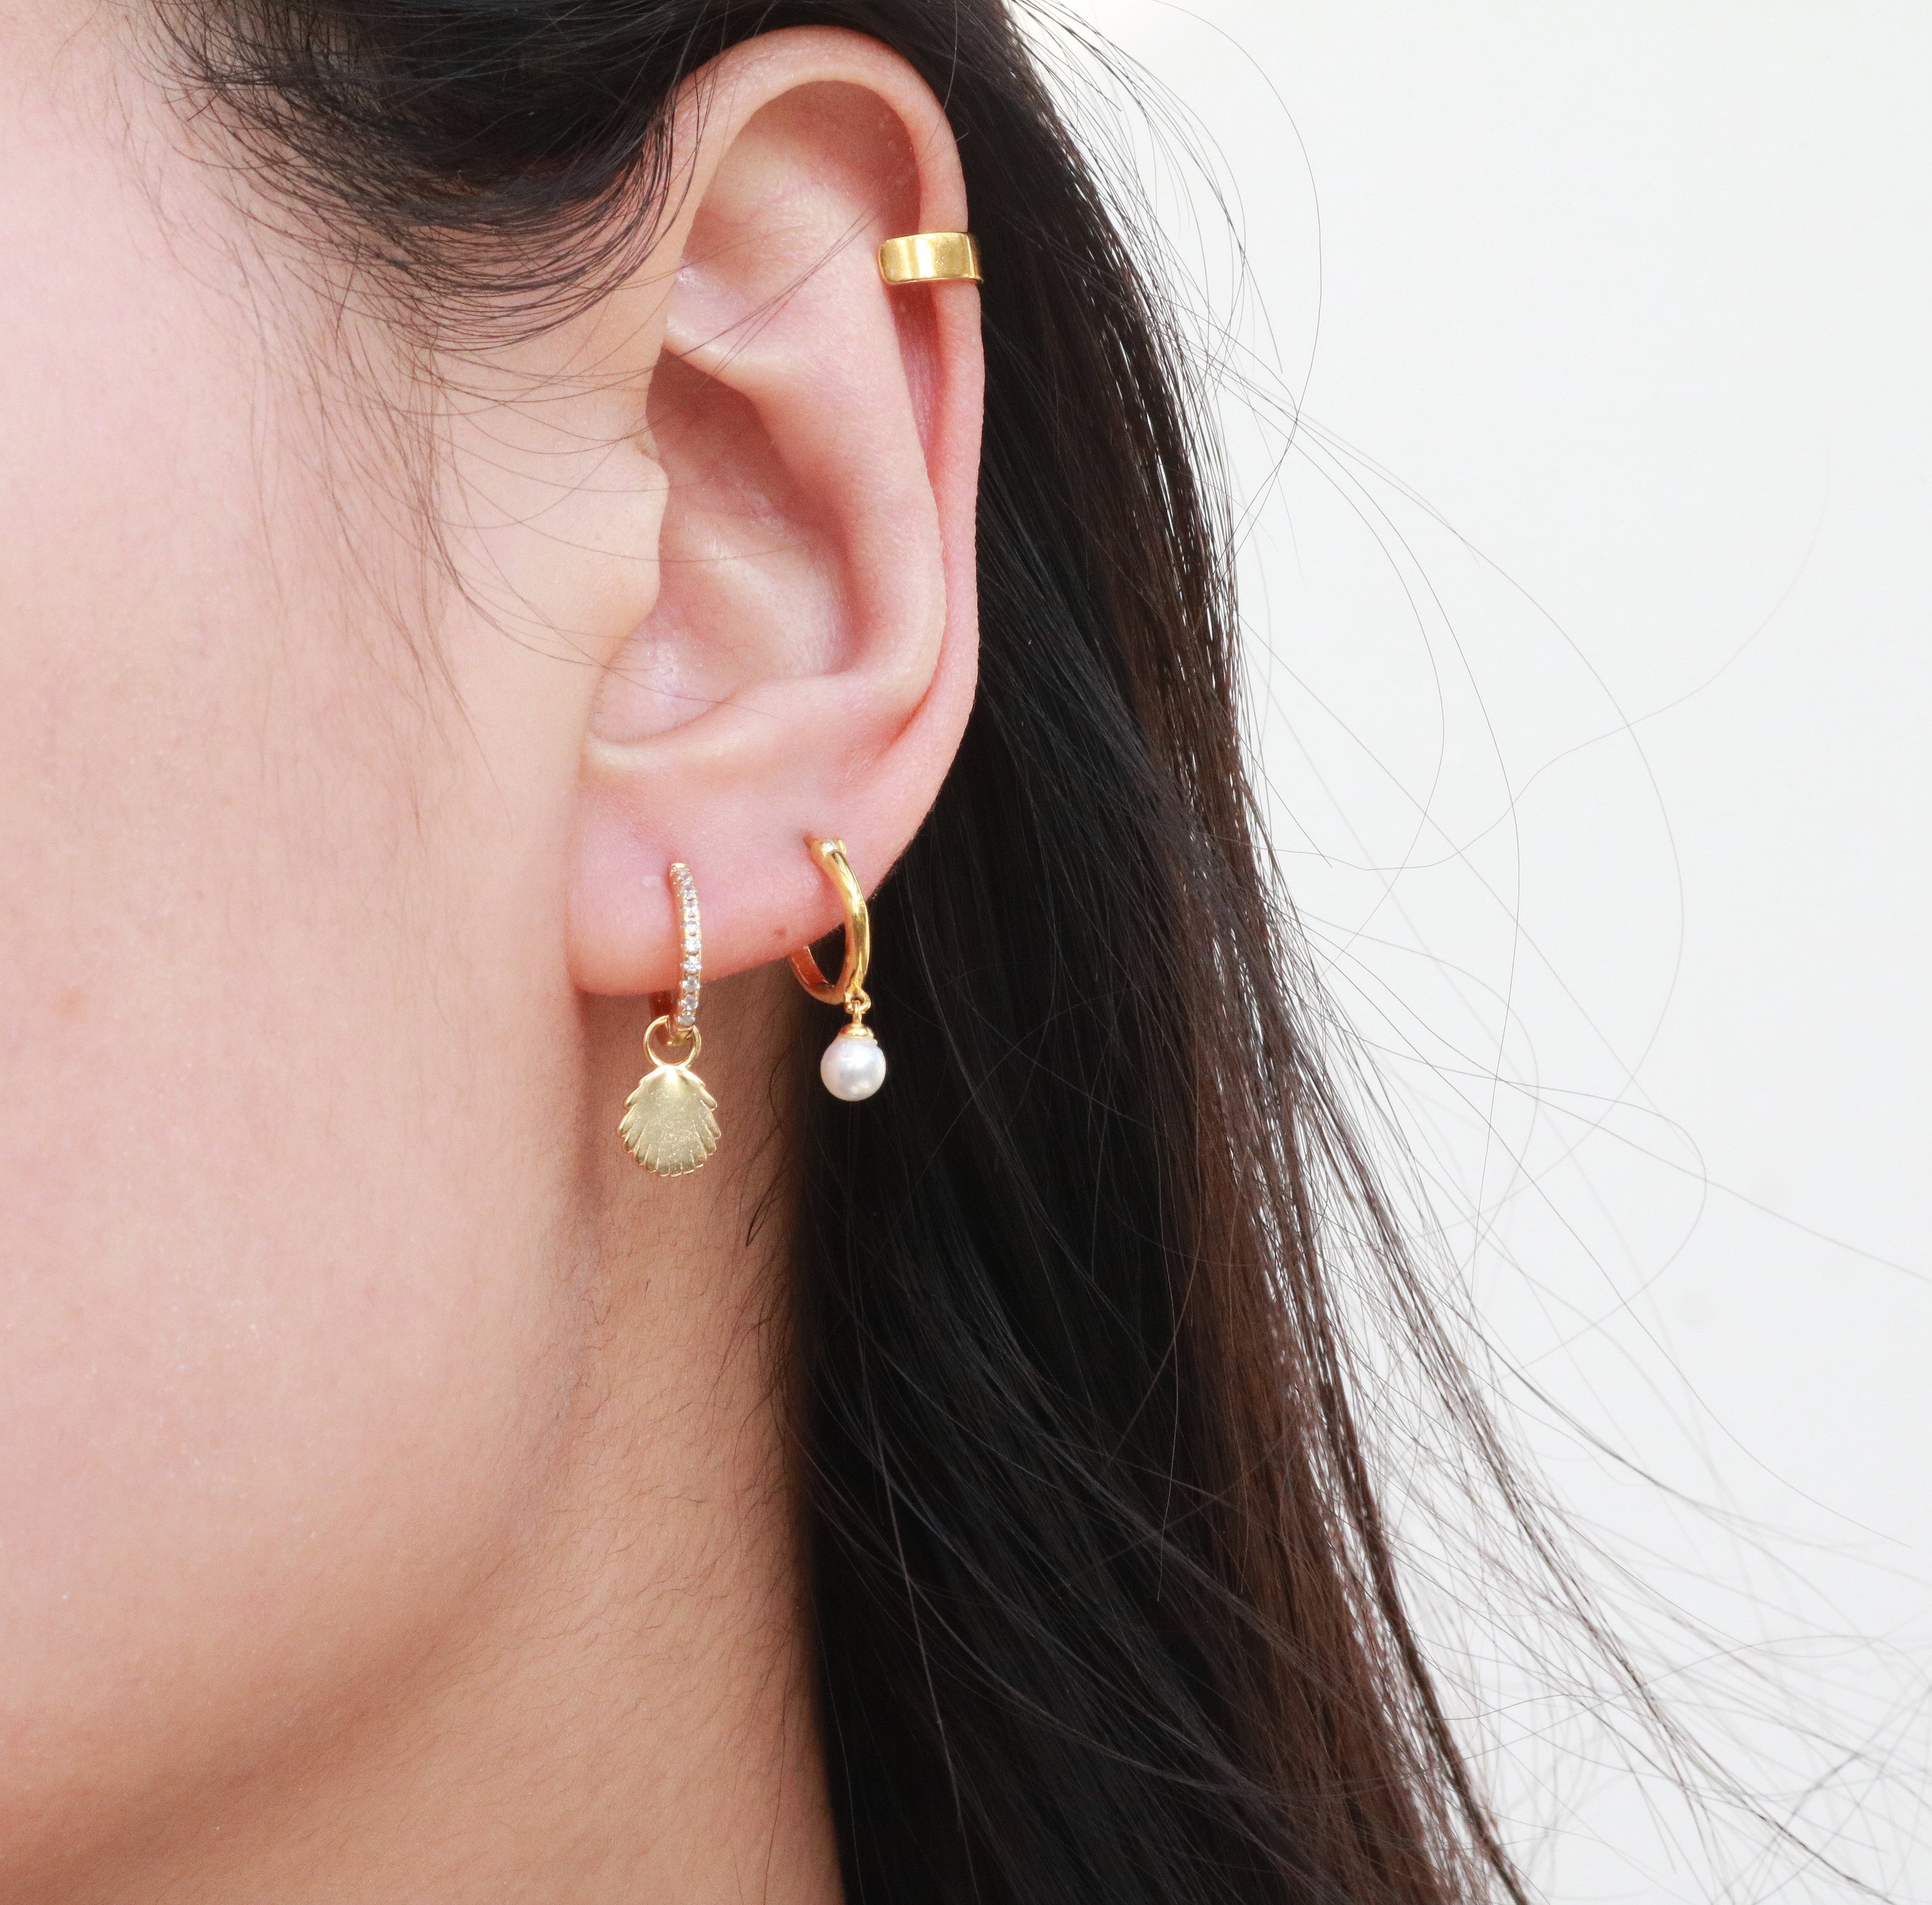 Meideya Jewelry - Woman wearing pearl hoop earring